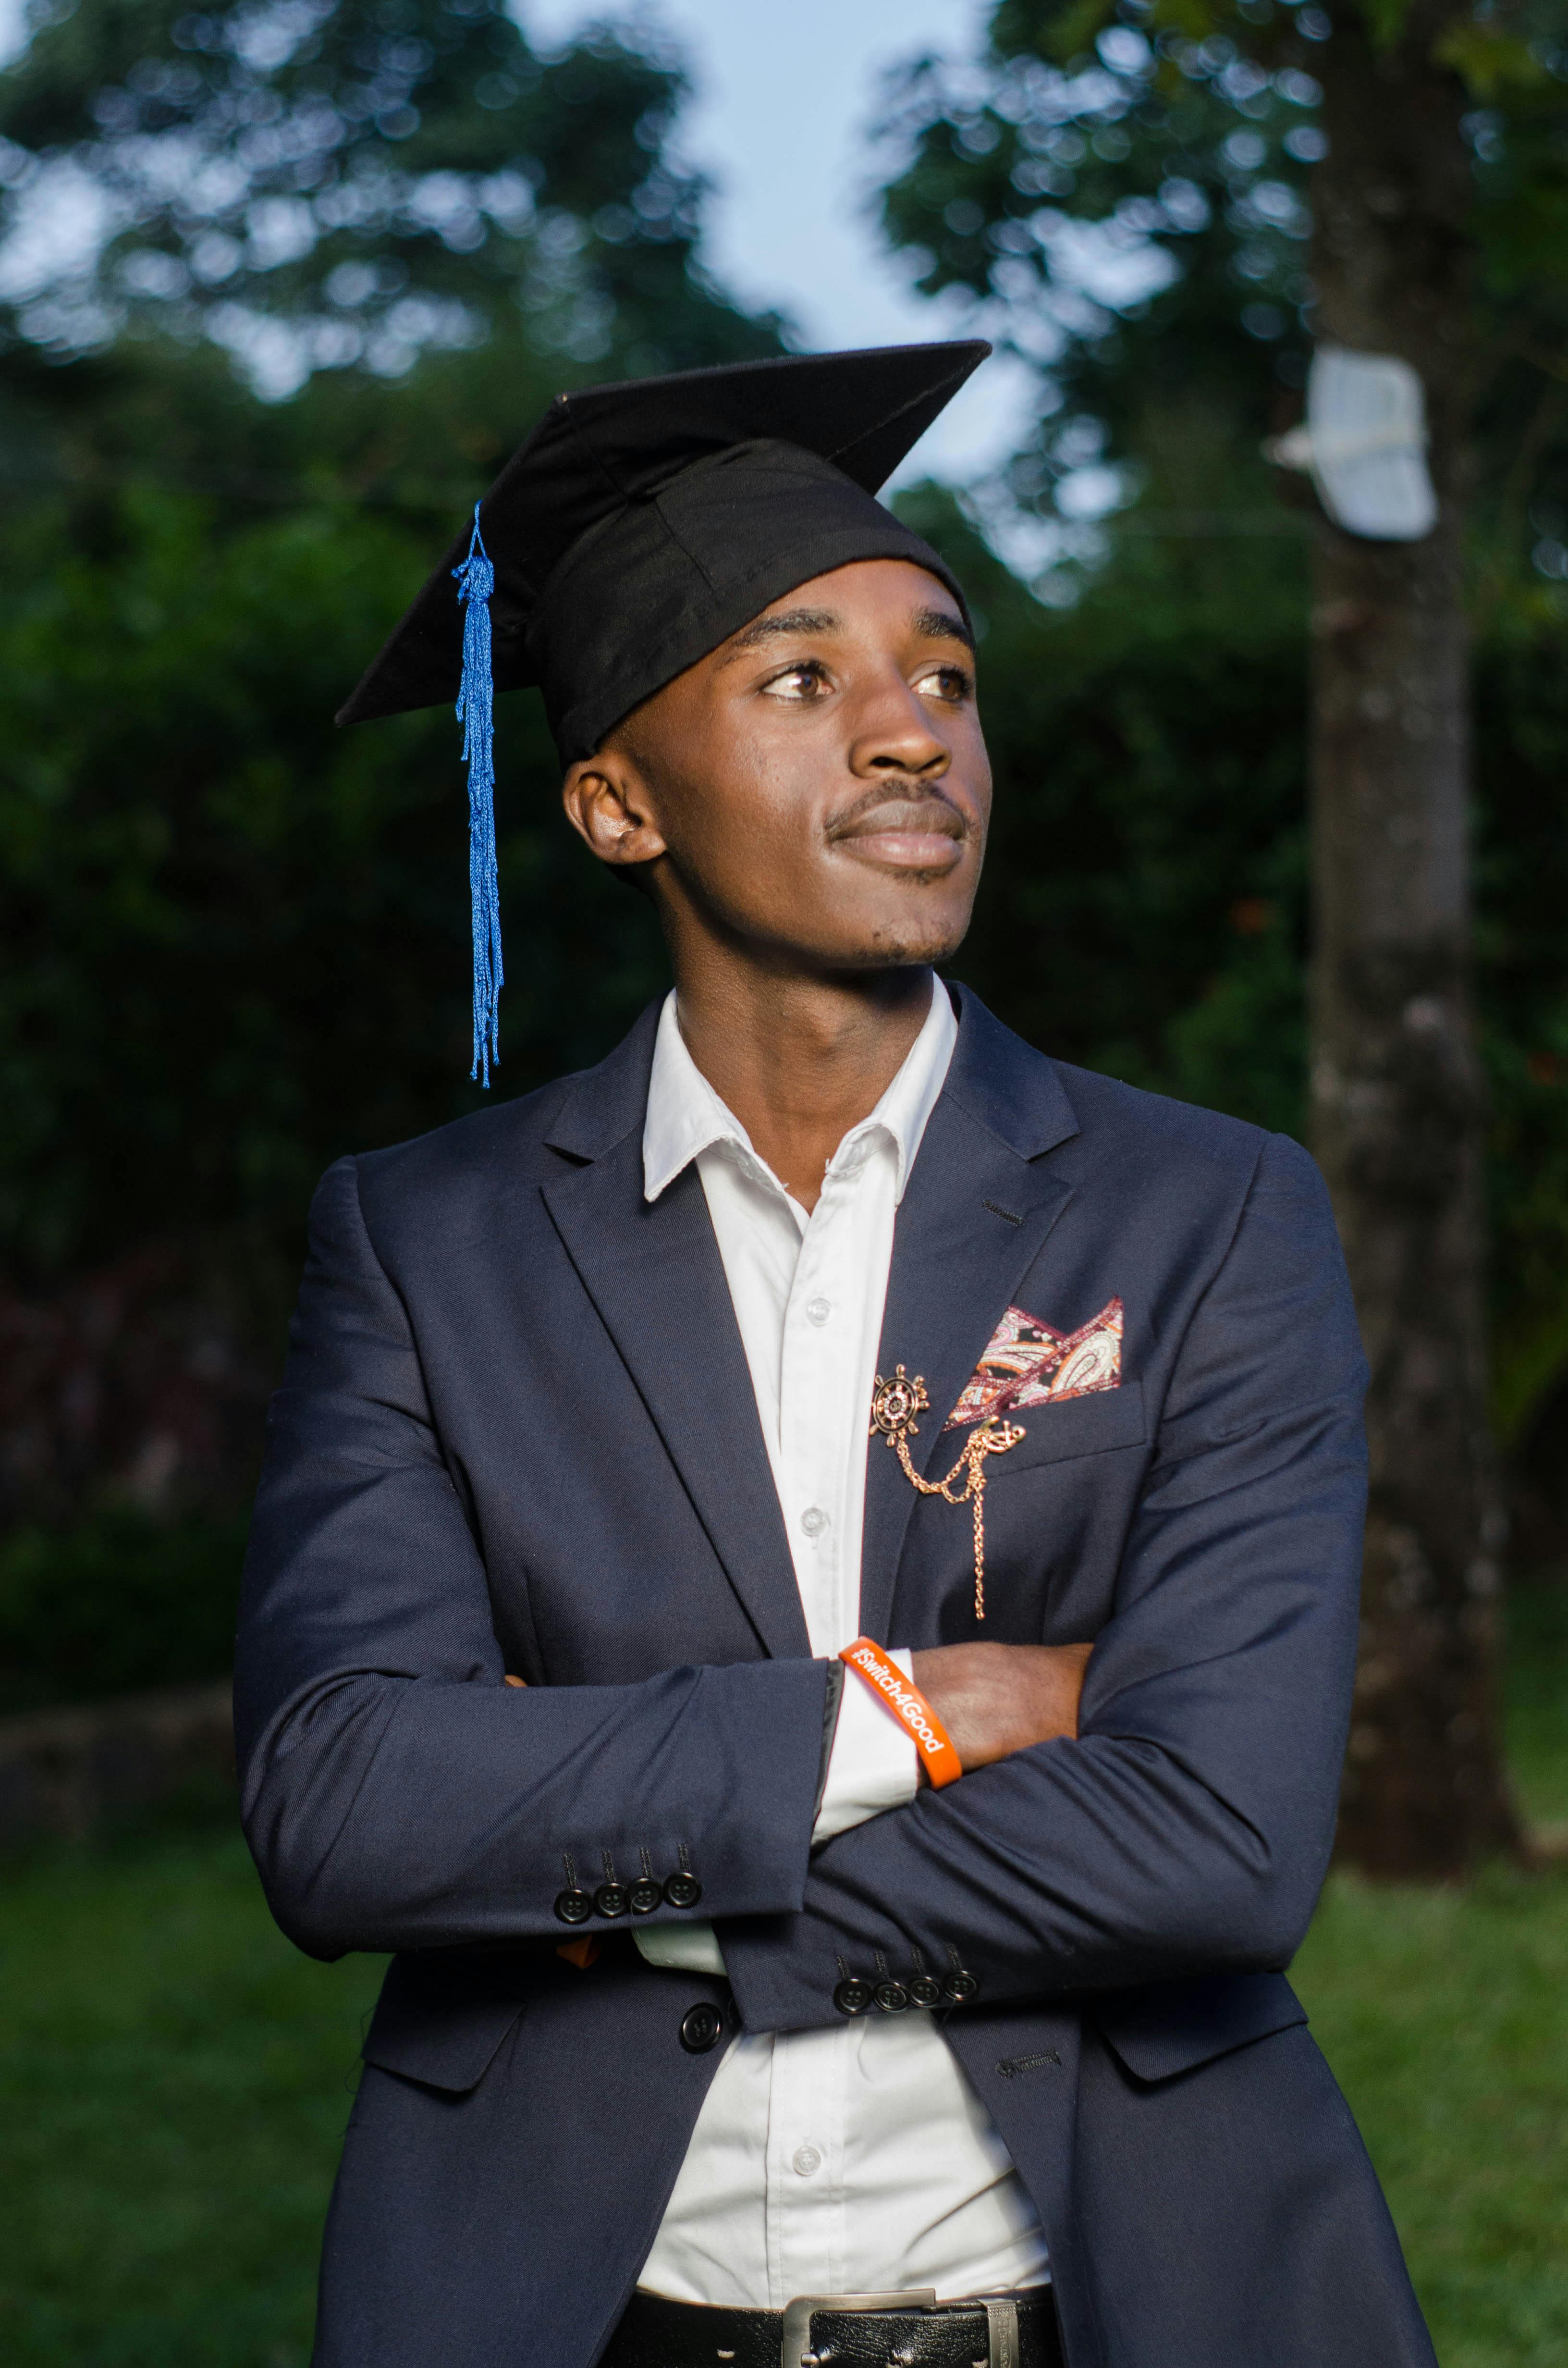 Graduation Suit Photos, Download The BEST Free Graduation Suit Stock ...